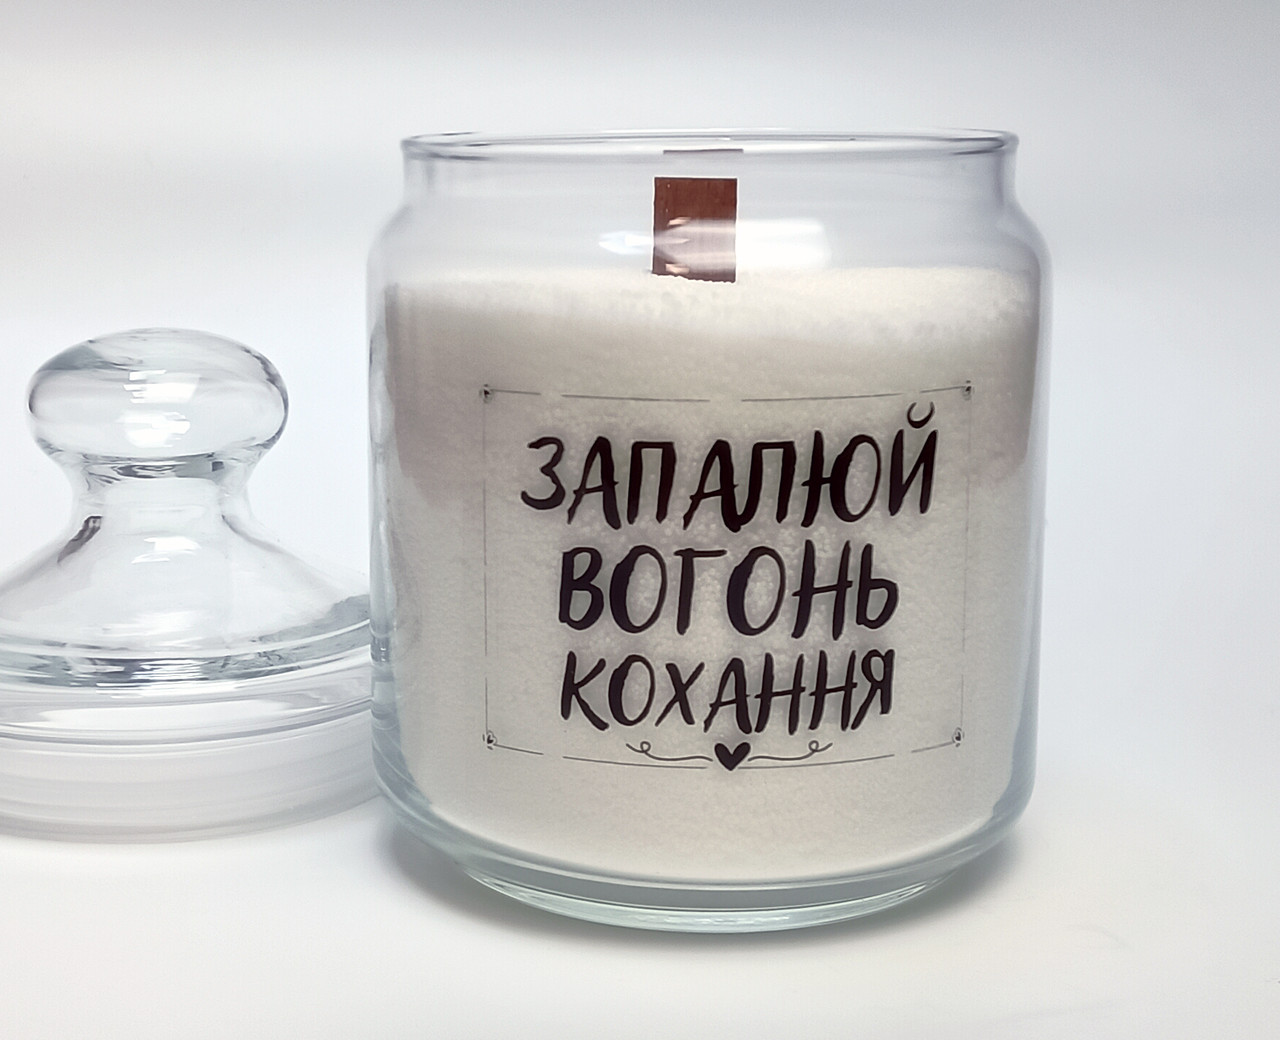 Любовна екологічна свічка: Вогонь кохання та турботи "Запалюй вогонь кохання" - подарунок для всіх закоханих